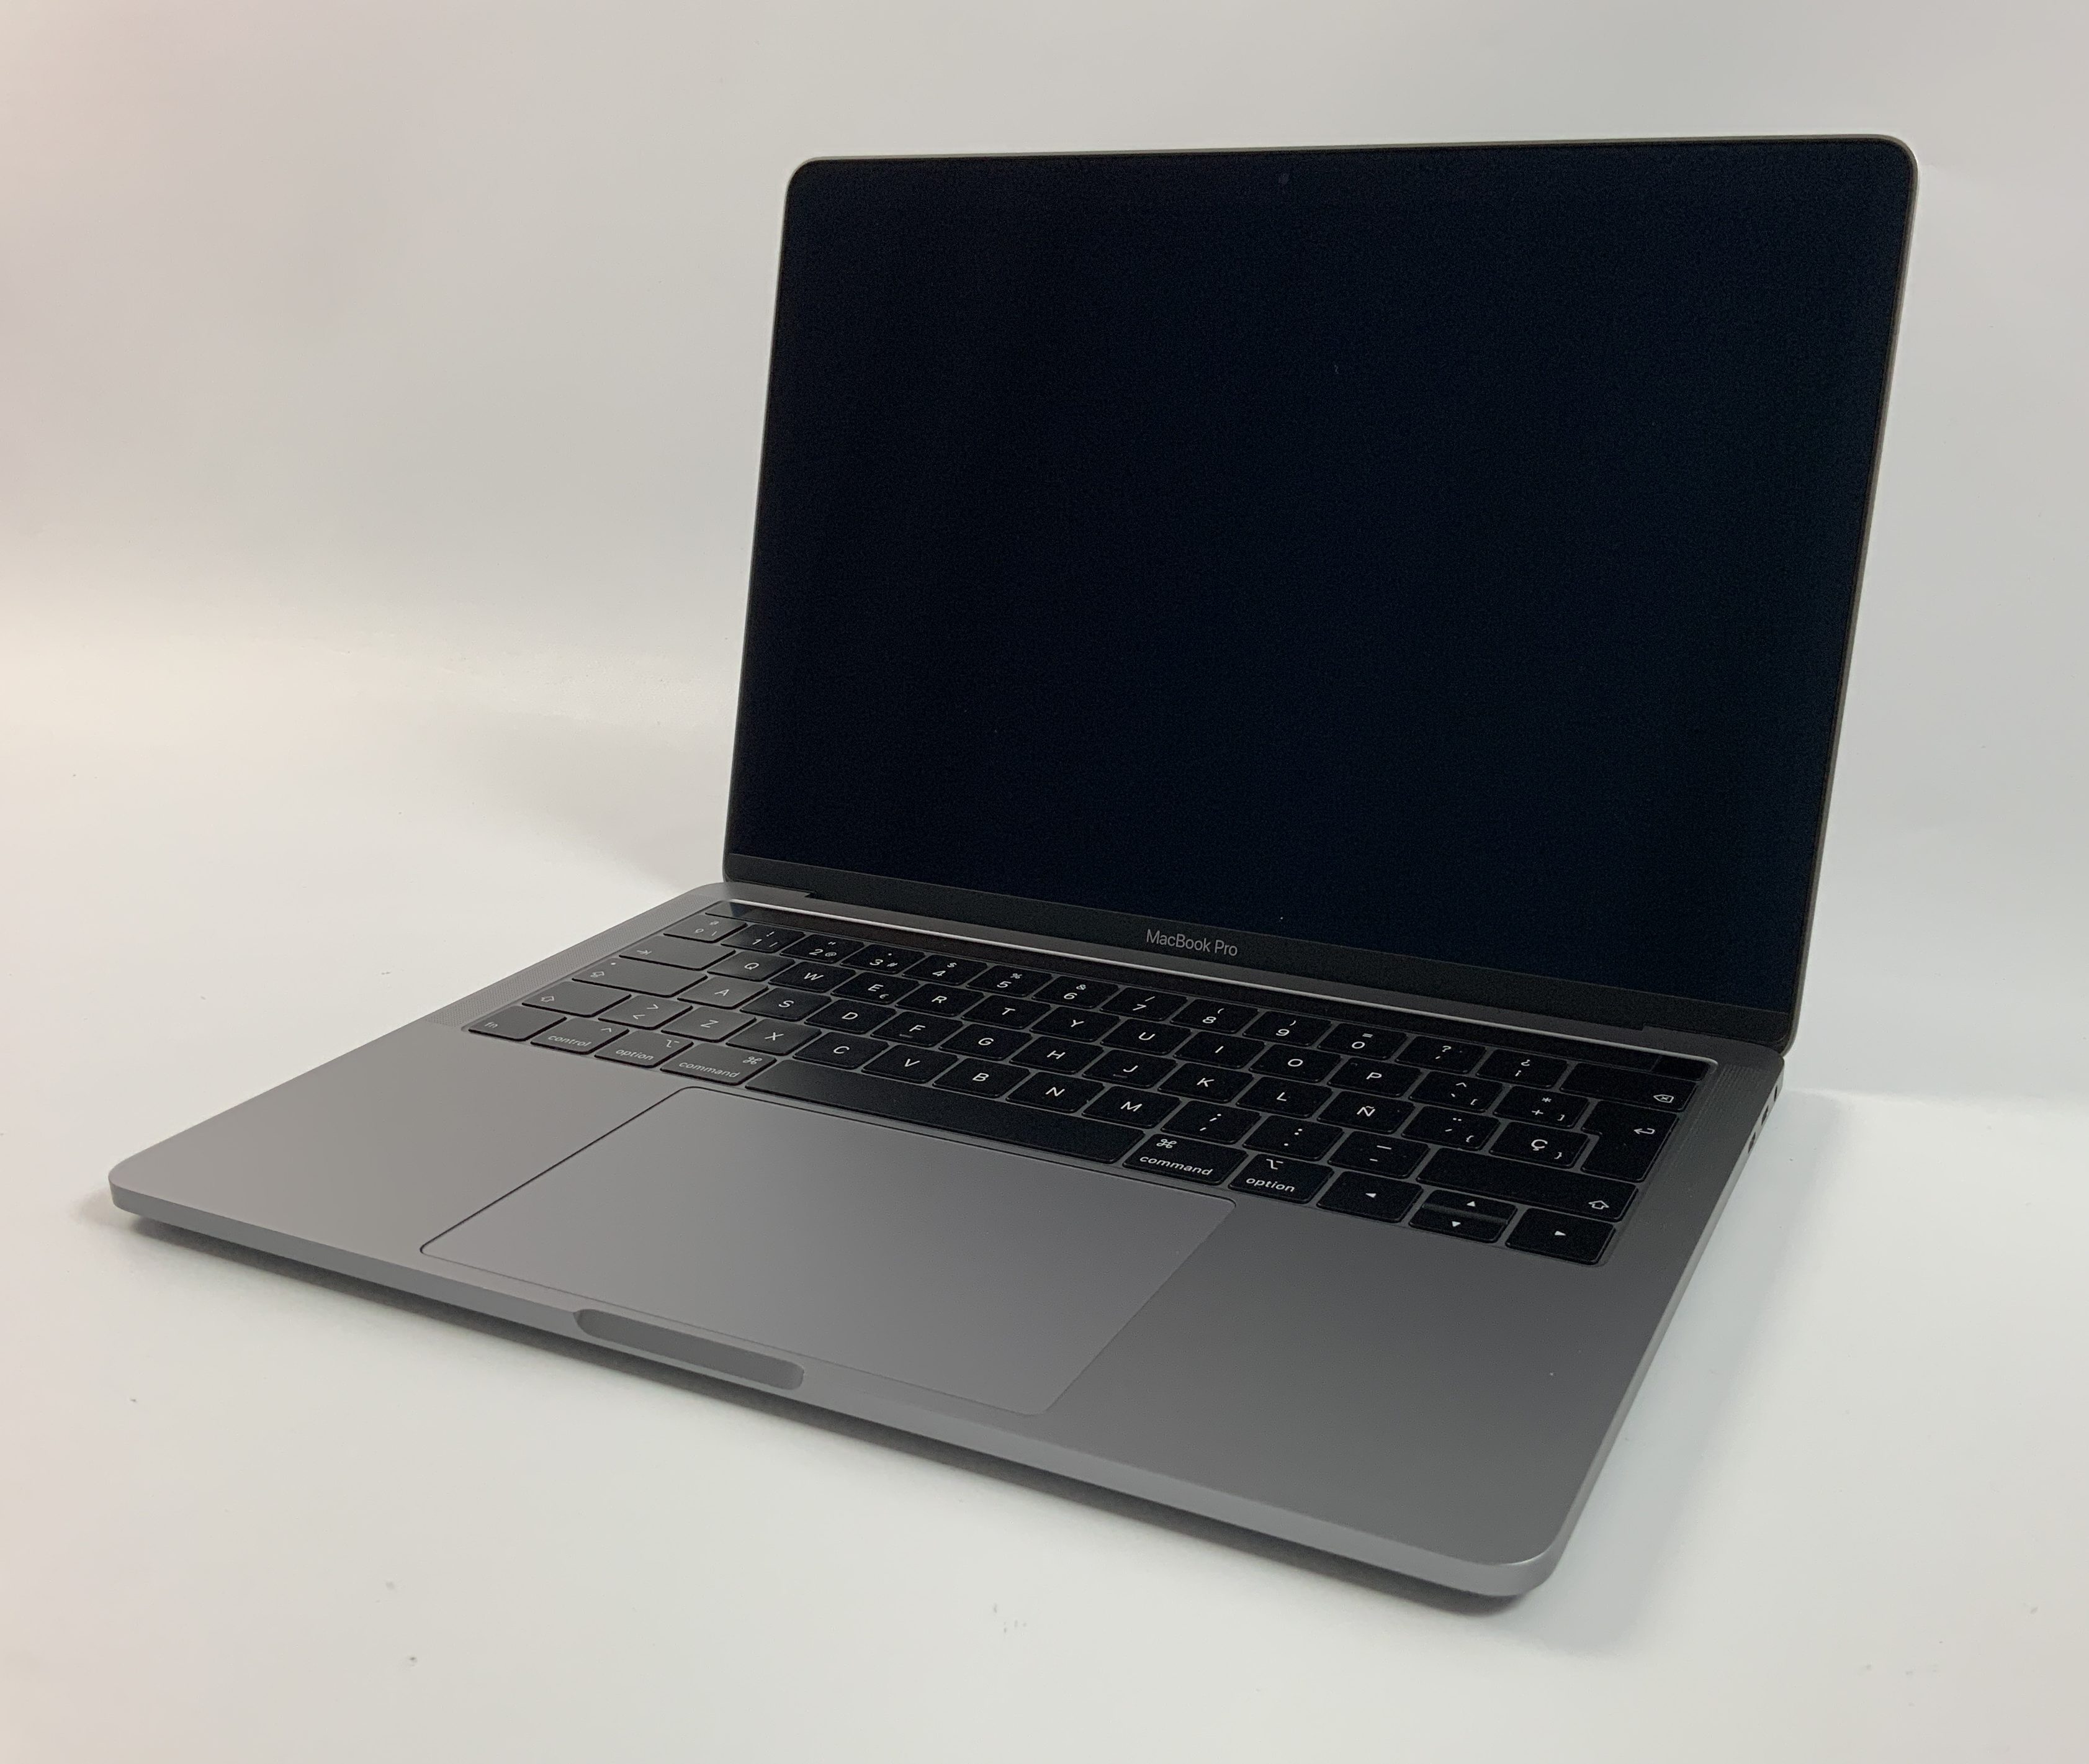 MacBook Pro 13" 4TBT Mid 2018 (Intel Quad-Core i5 2.3 GHz 8 GB RAM 512 GB SSD), Space Gray, Intel Quad-Core i5 2.3 GHz, 8 GB RAM, 512 GB SSD, bild 1